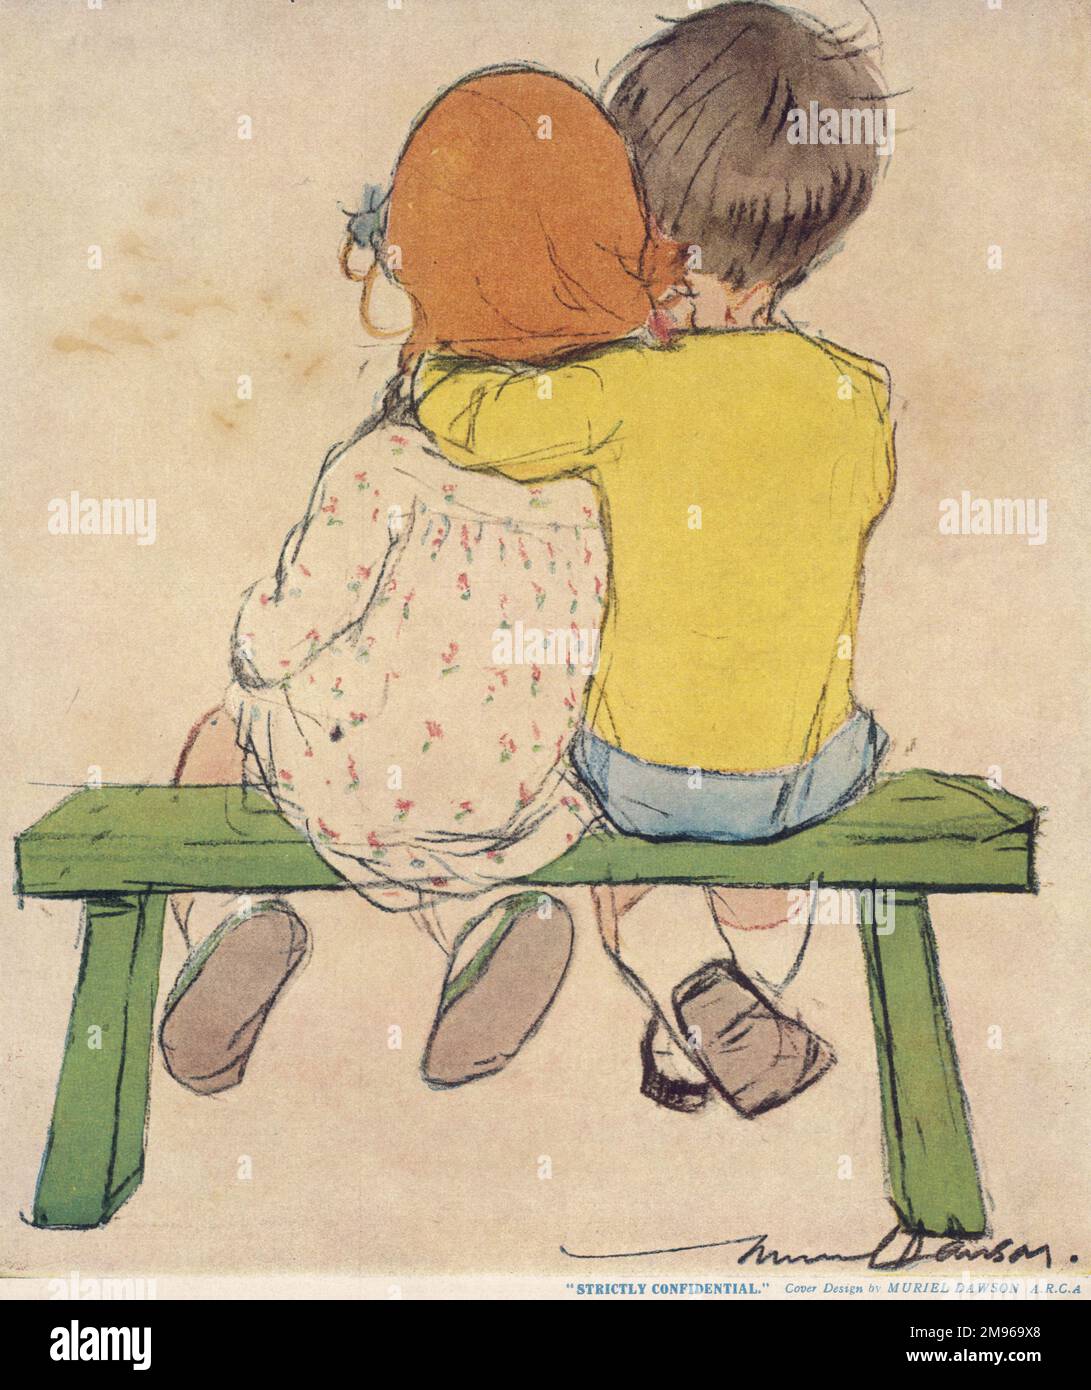 Un ragazzino e una ragazza si siedono insieme su una panchina, il braccio del ragazzo intorno alla ragazza mentre discutono i segreti. Foto Stock